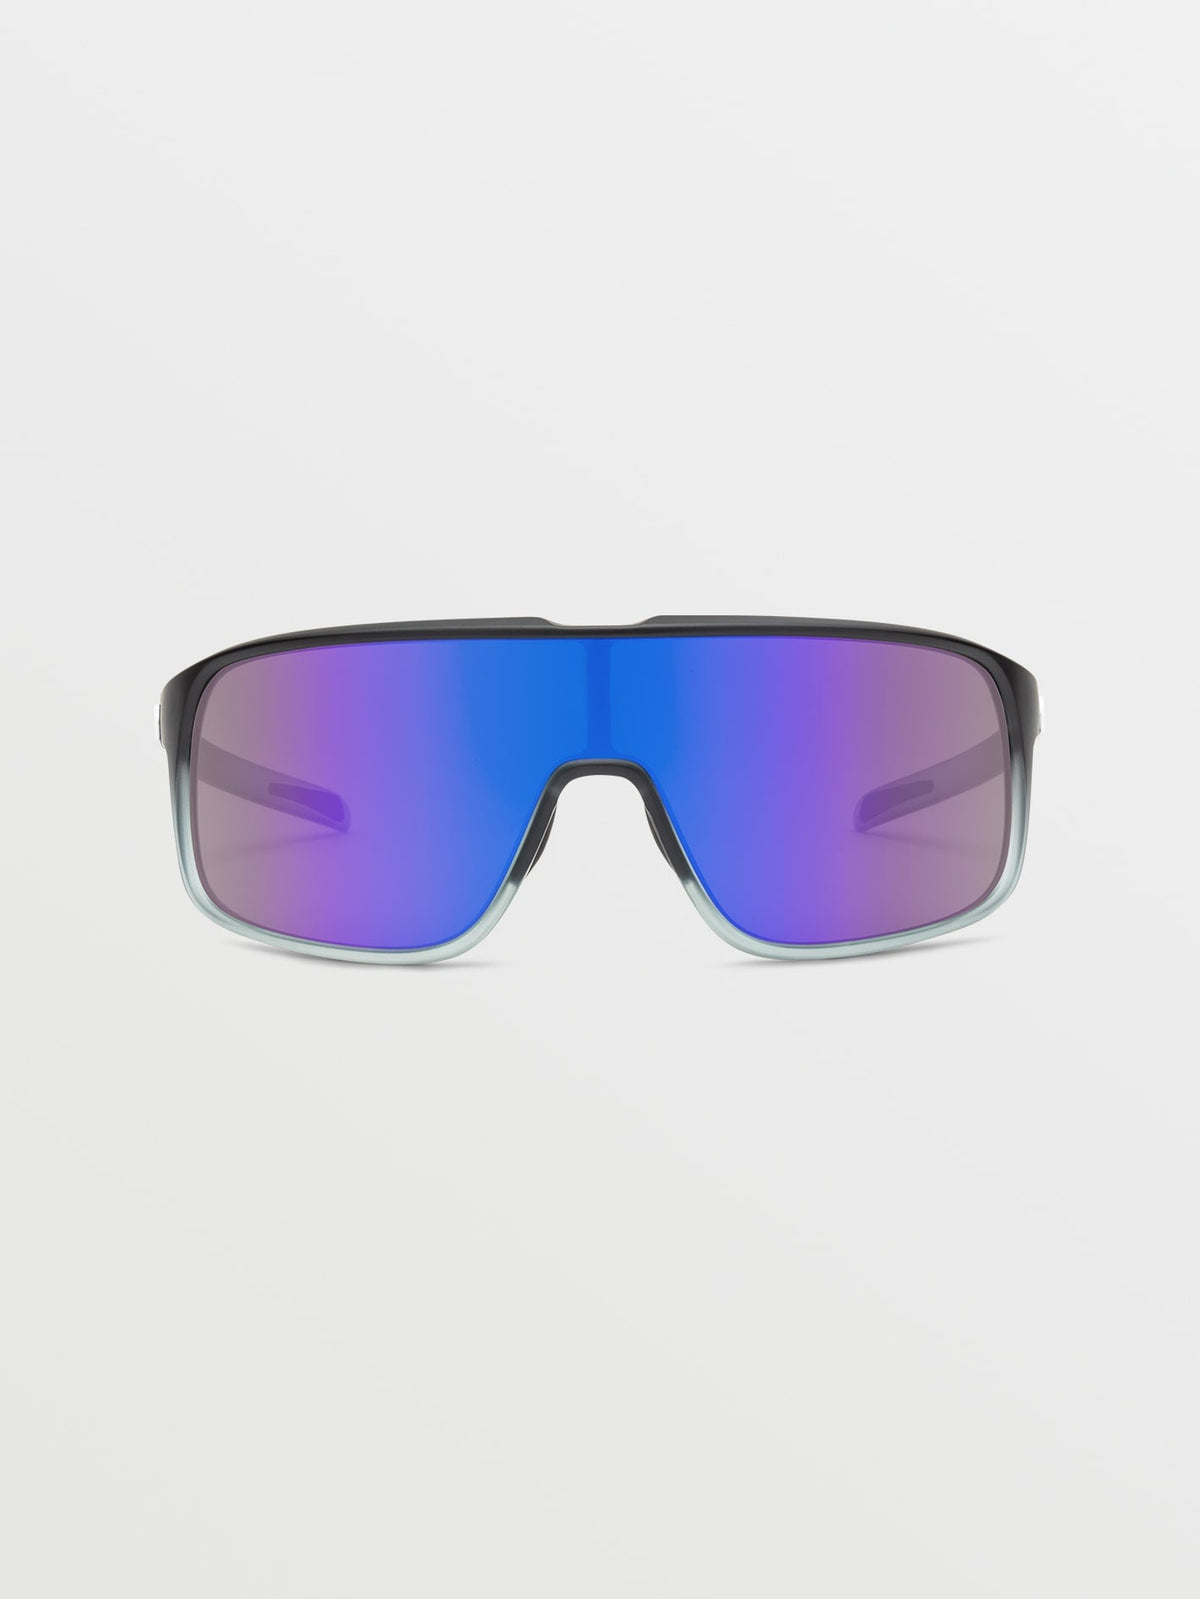 Volcom Macho Sunglasses Matte Black Clear Fade/Gray Blue Mirror Matte Black Clr Fade